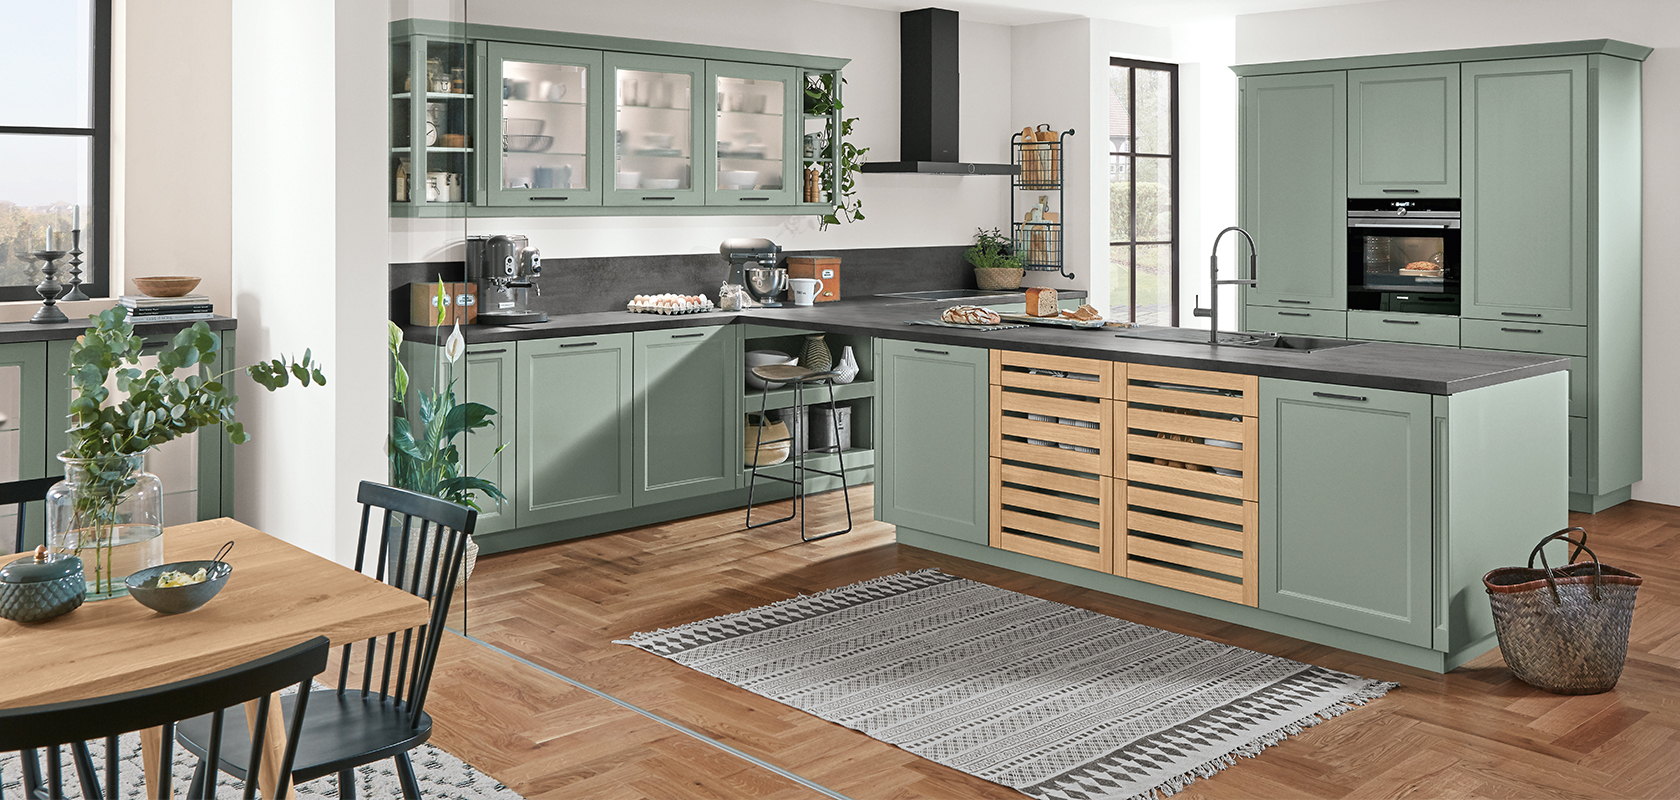 Ampia cucina con mobili verdi salvia, elettrodomestici moderni e pavimento in legno, valorizzata dalla luce naturale e dalla fresca vegetazione.